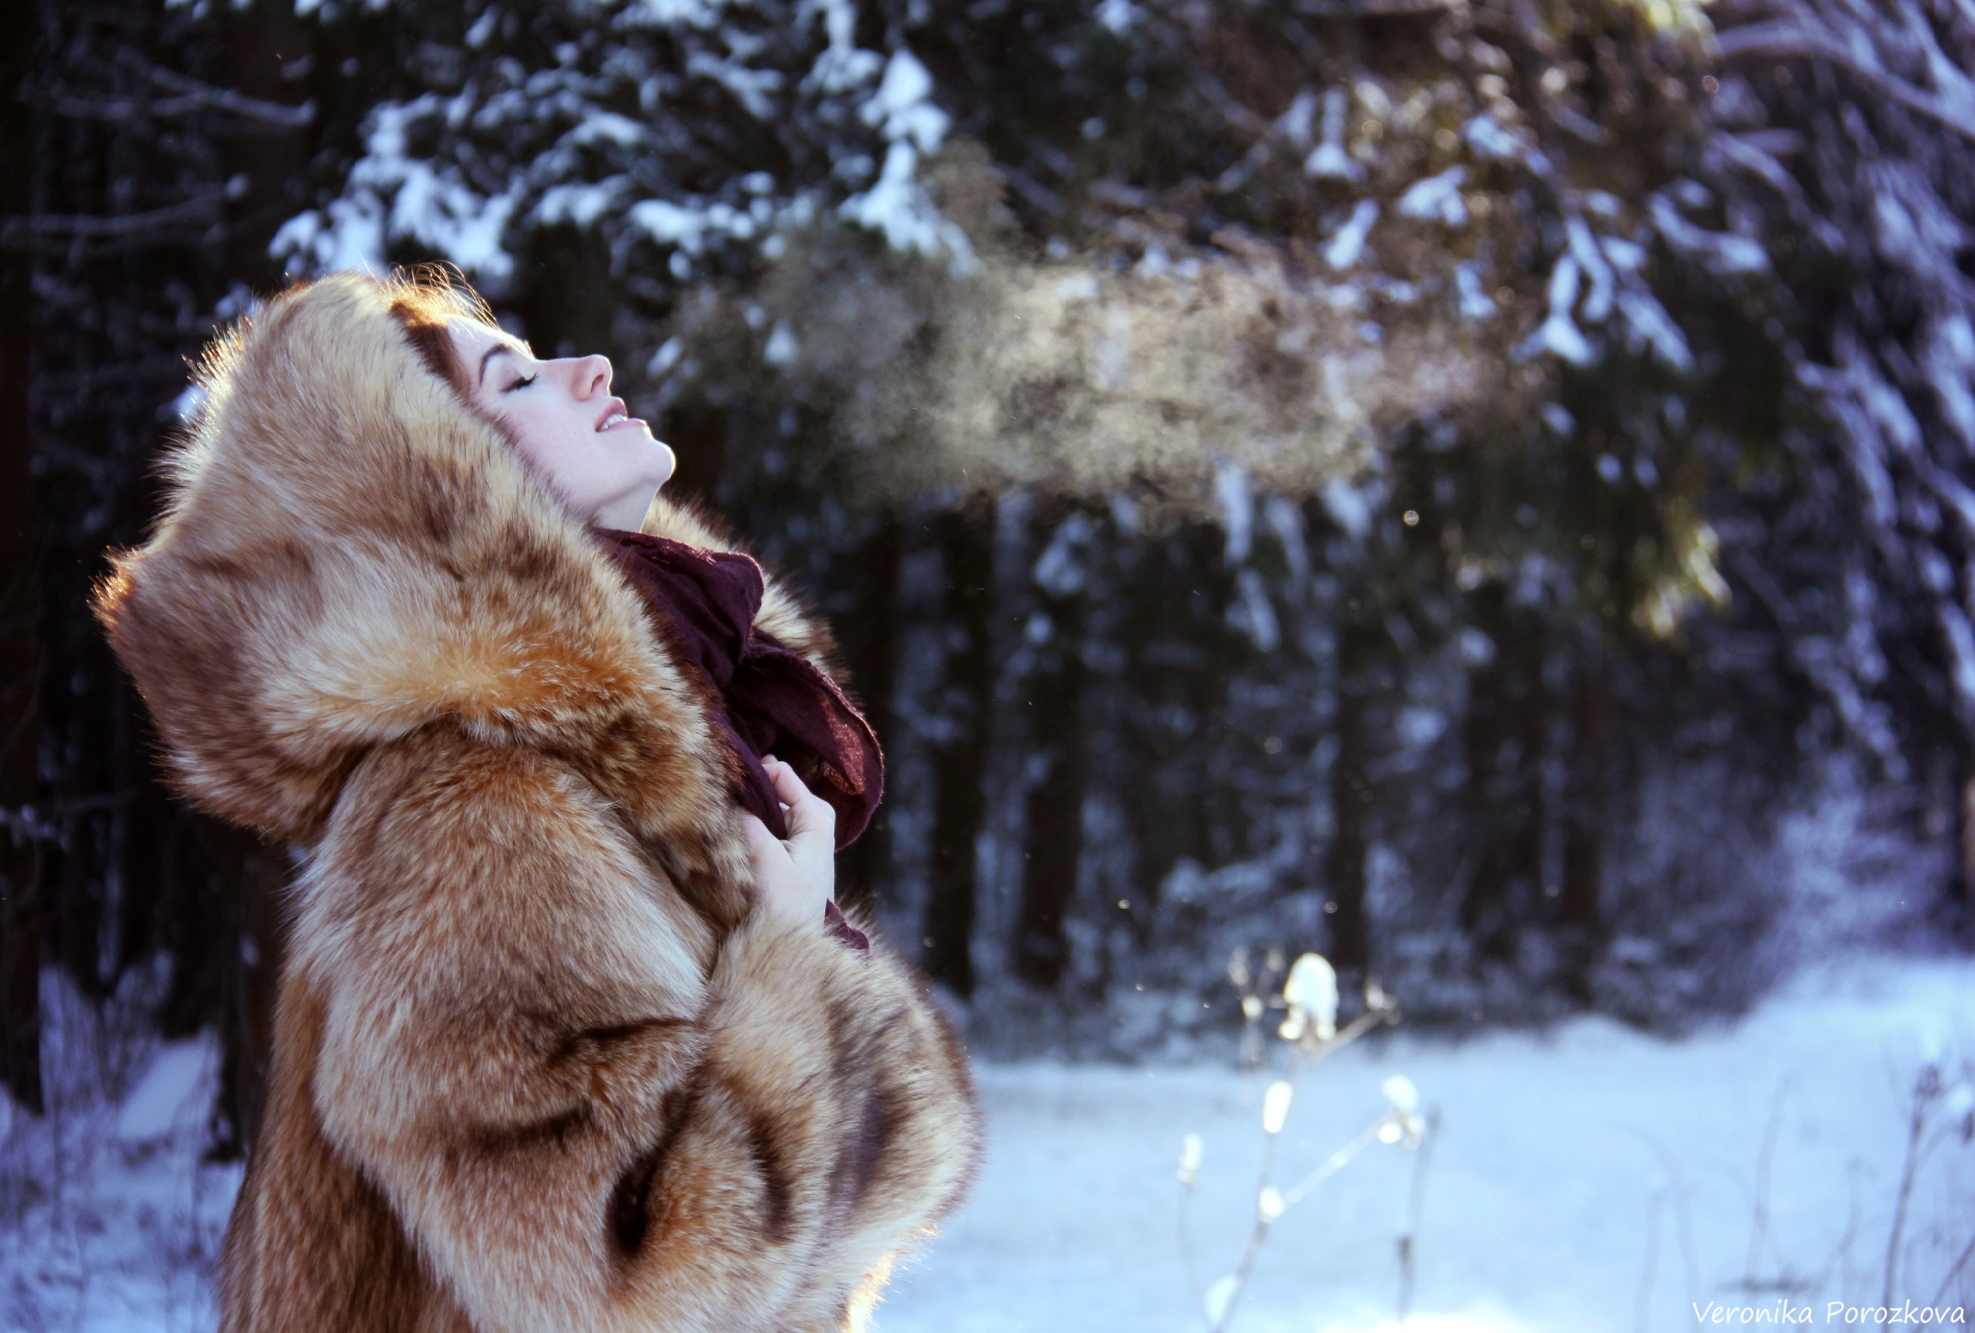 Тепло ли в шубе. Красивые девушки в шубах. Зимняя фотосессия в лесу в шубе. Девушка в шубке. Фотосессия шуб на природе.